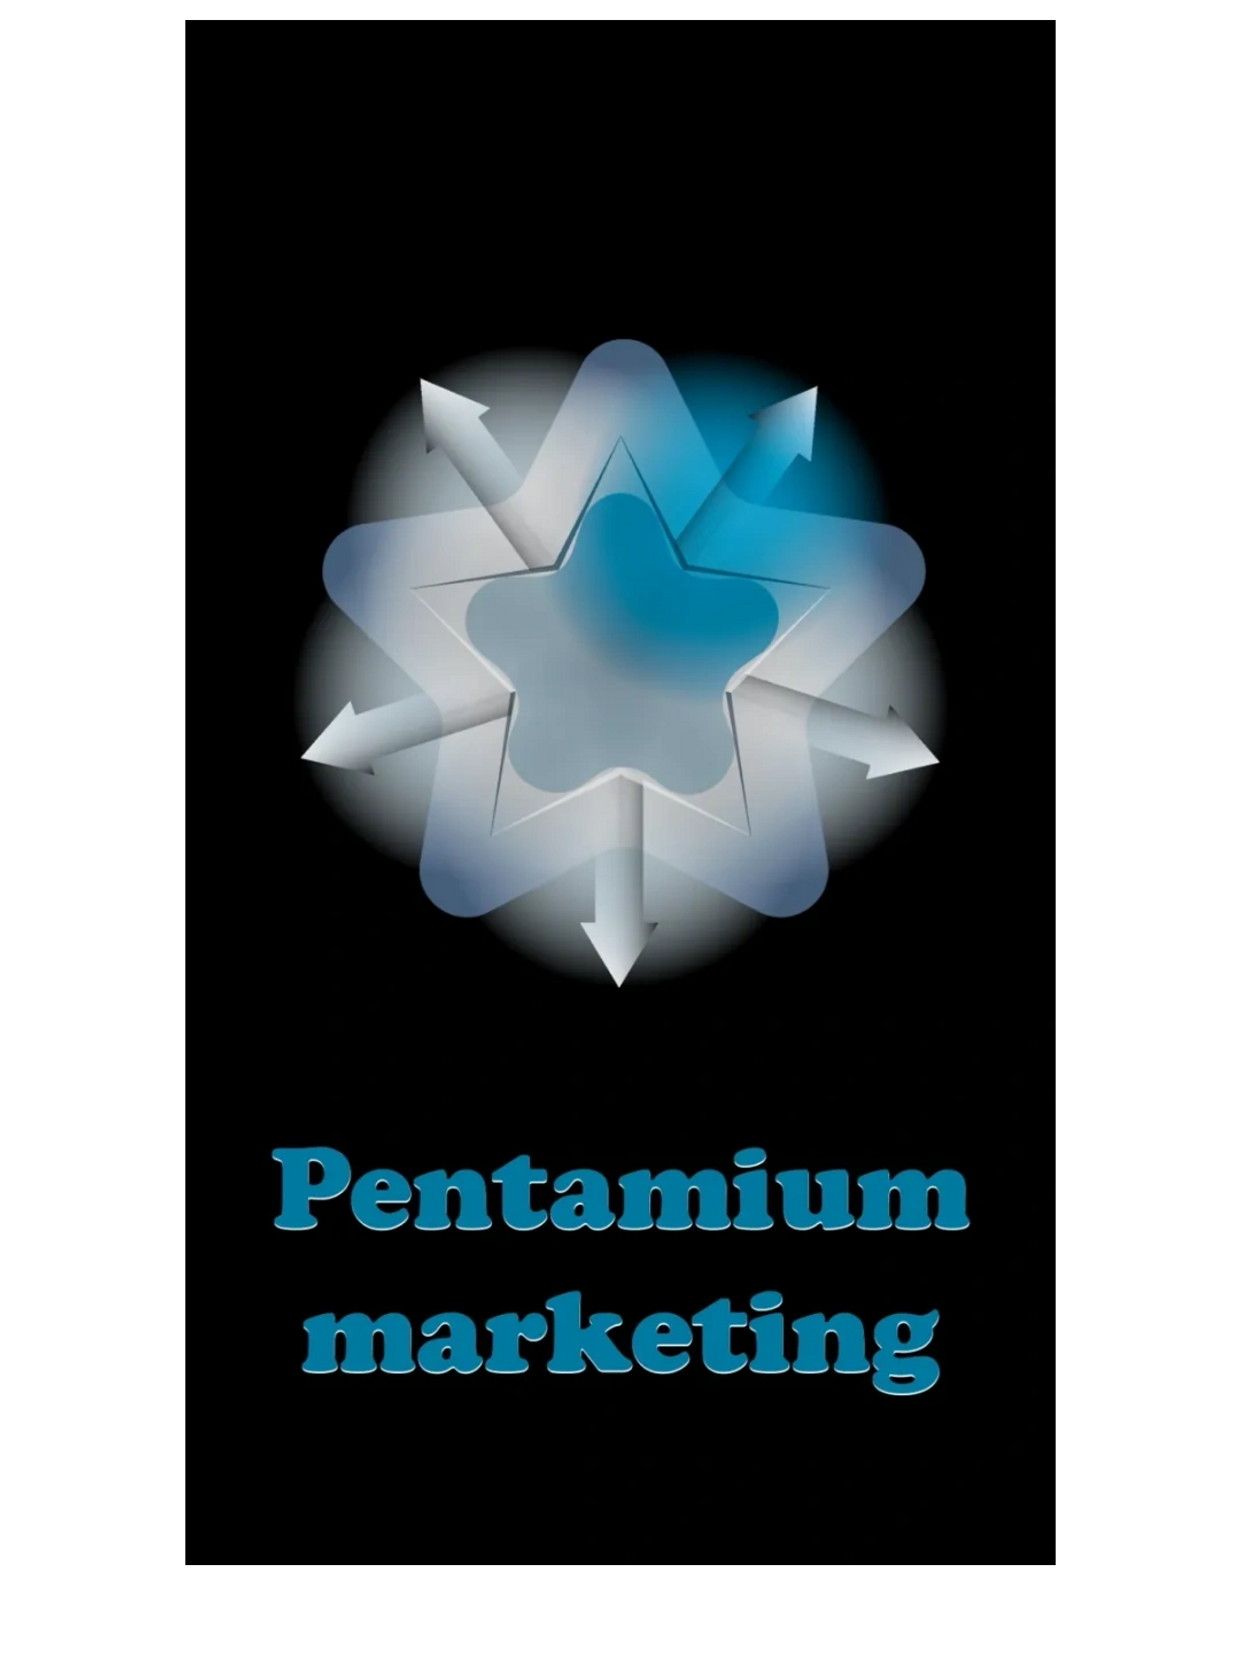 Pentamium marketing logo